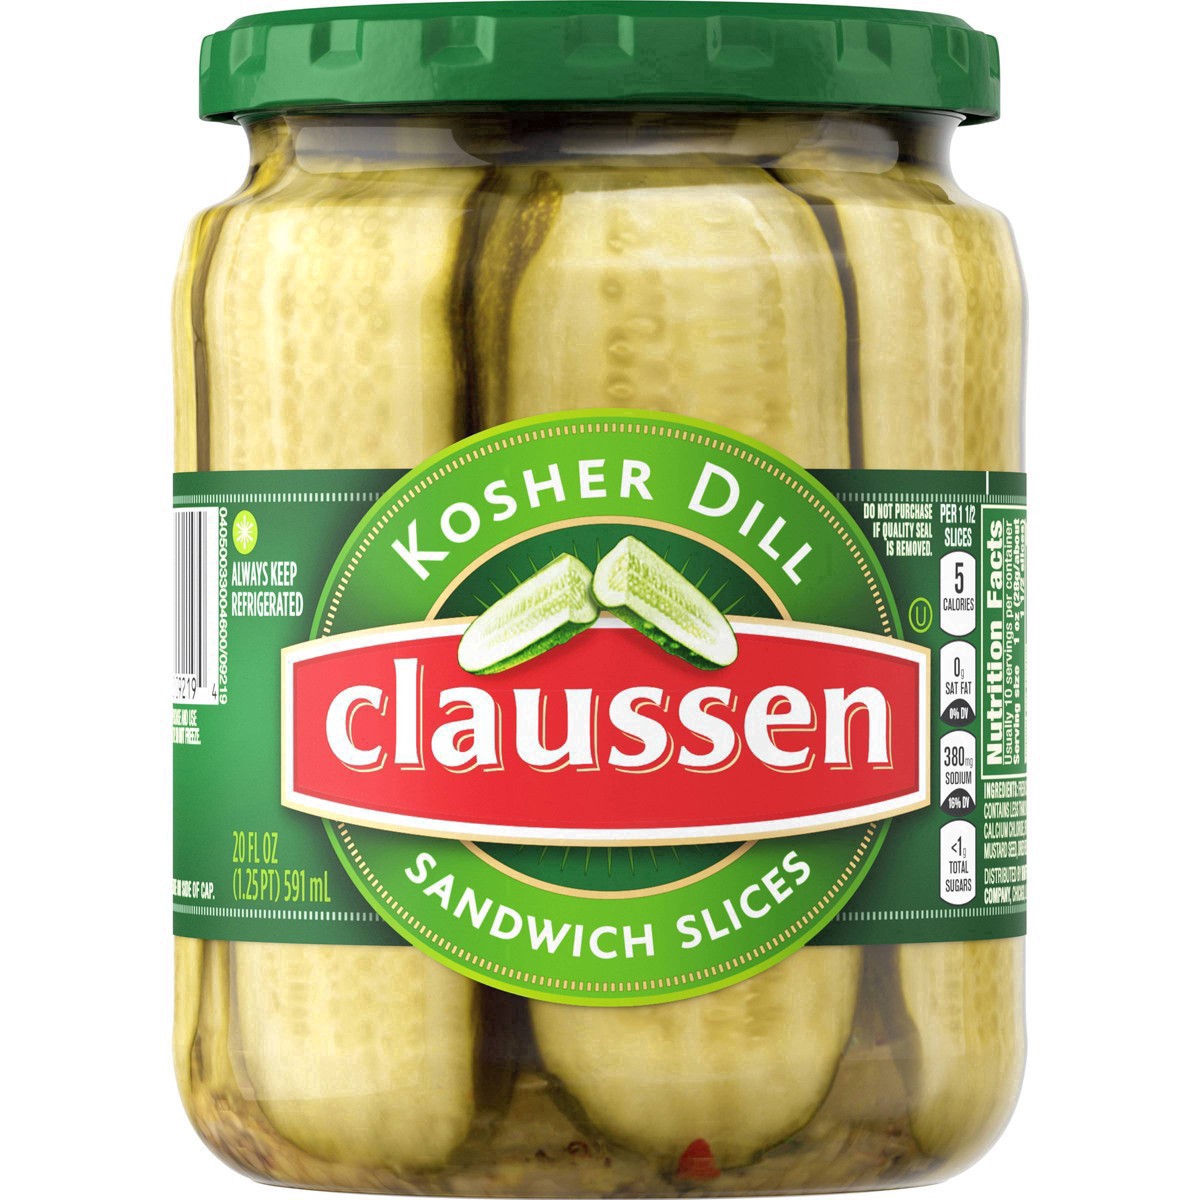 slide 60 of 144, Claussen Kosher Dill Pickle Sandwich Slices, 20 fl. oz. Jar, 20 fl oz